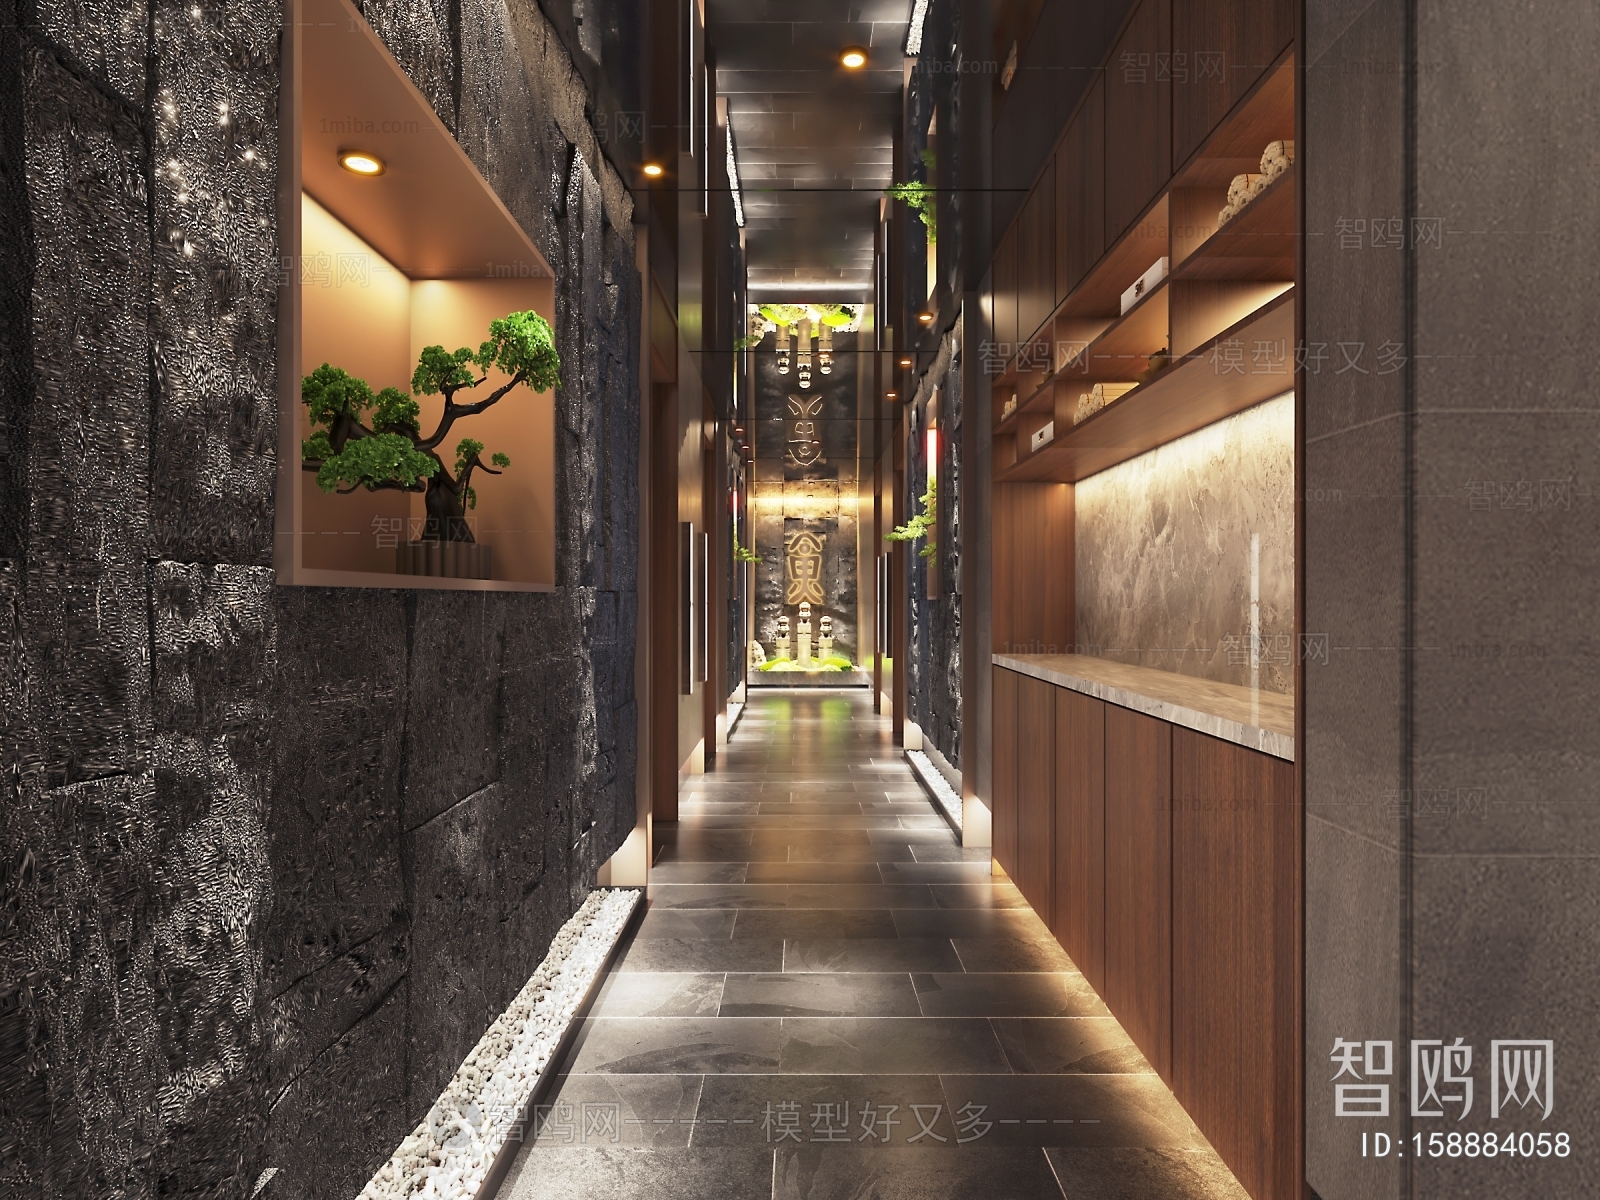 多场景-新中式火锅店走廊+卫生间+茶室